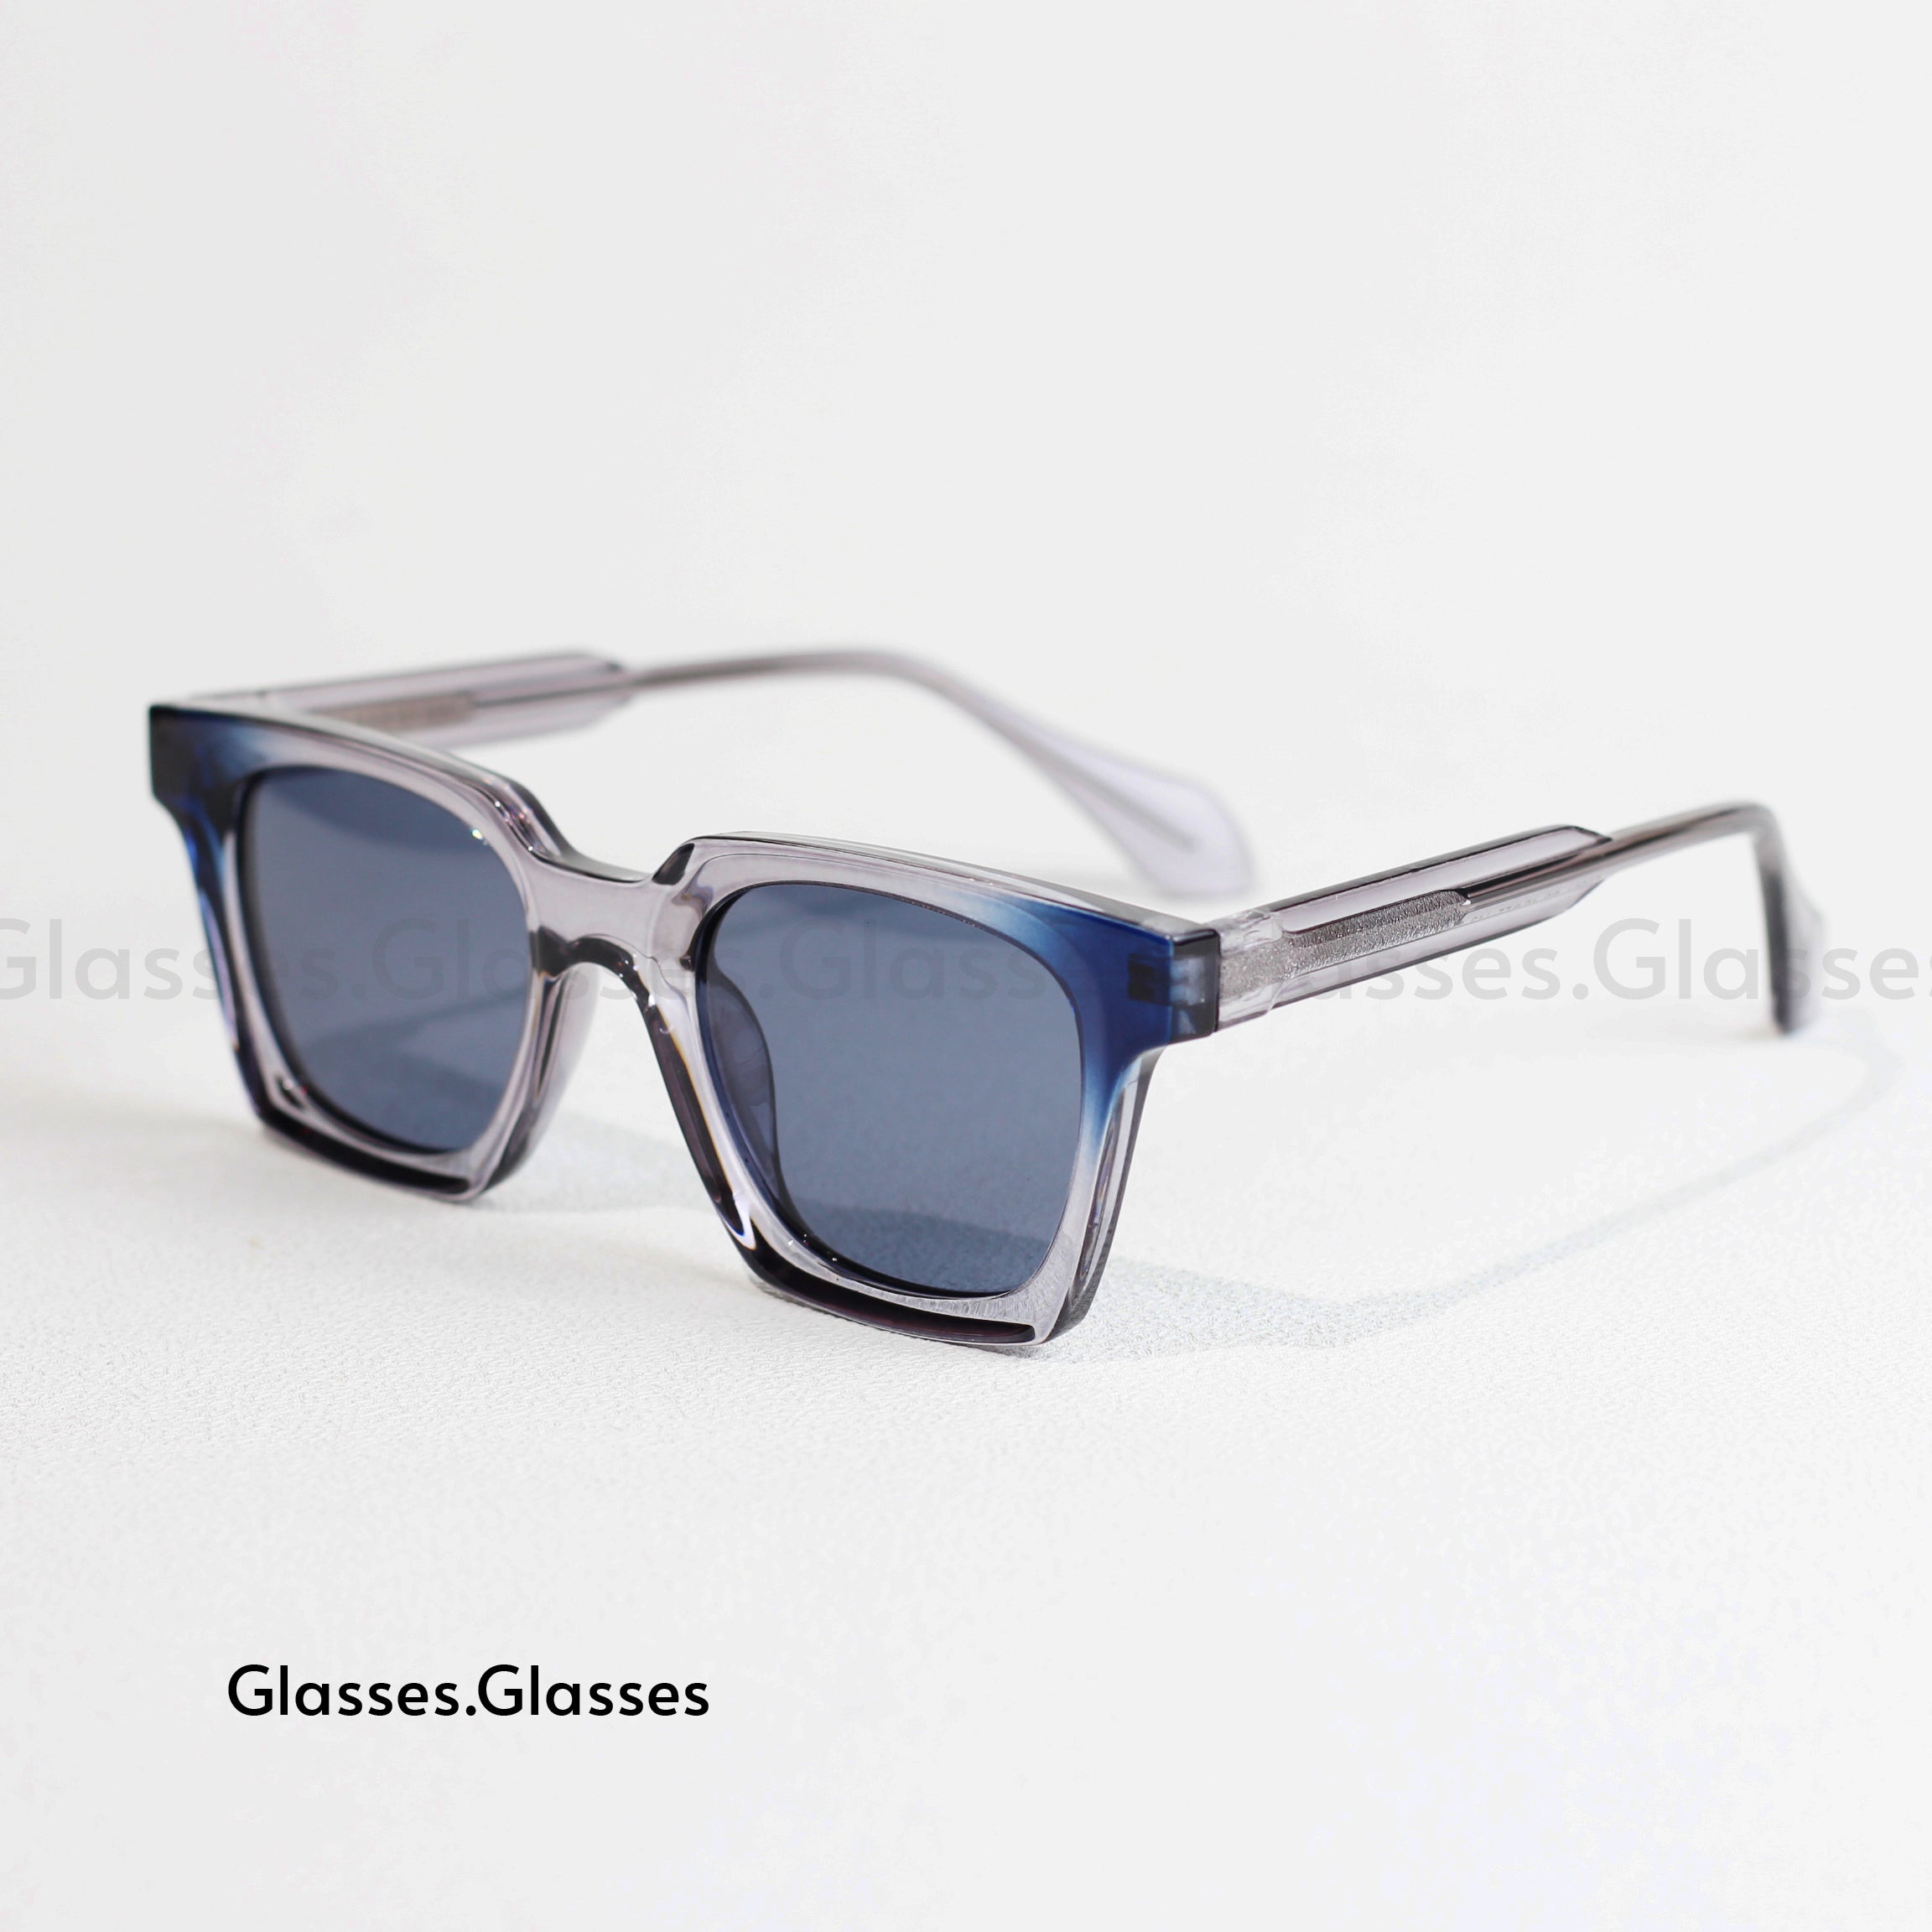 The Gang - Swanwick CP acetate square sunglasses men UV400 polarized - Cermin mata. Cermin mata